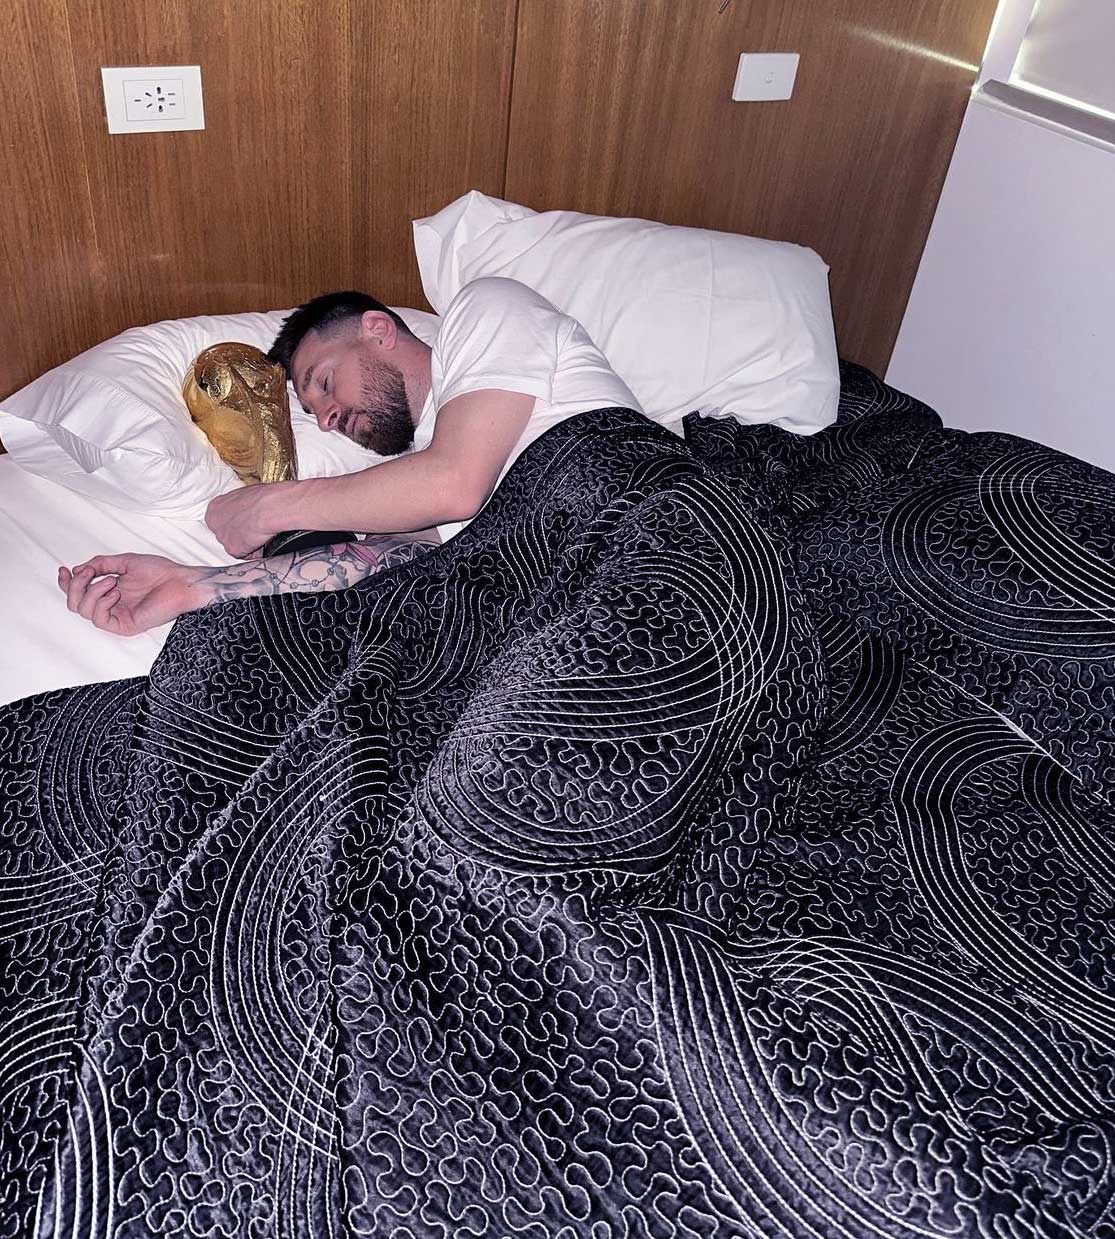  ميسي يحتضن كأس العالم في غرفة النوم